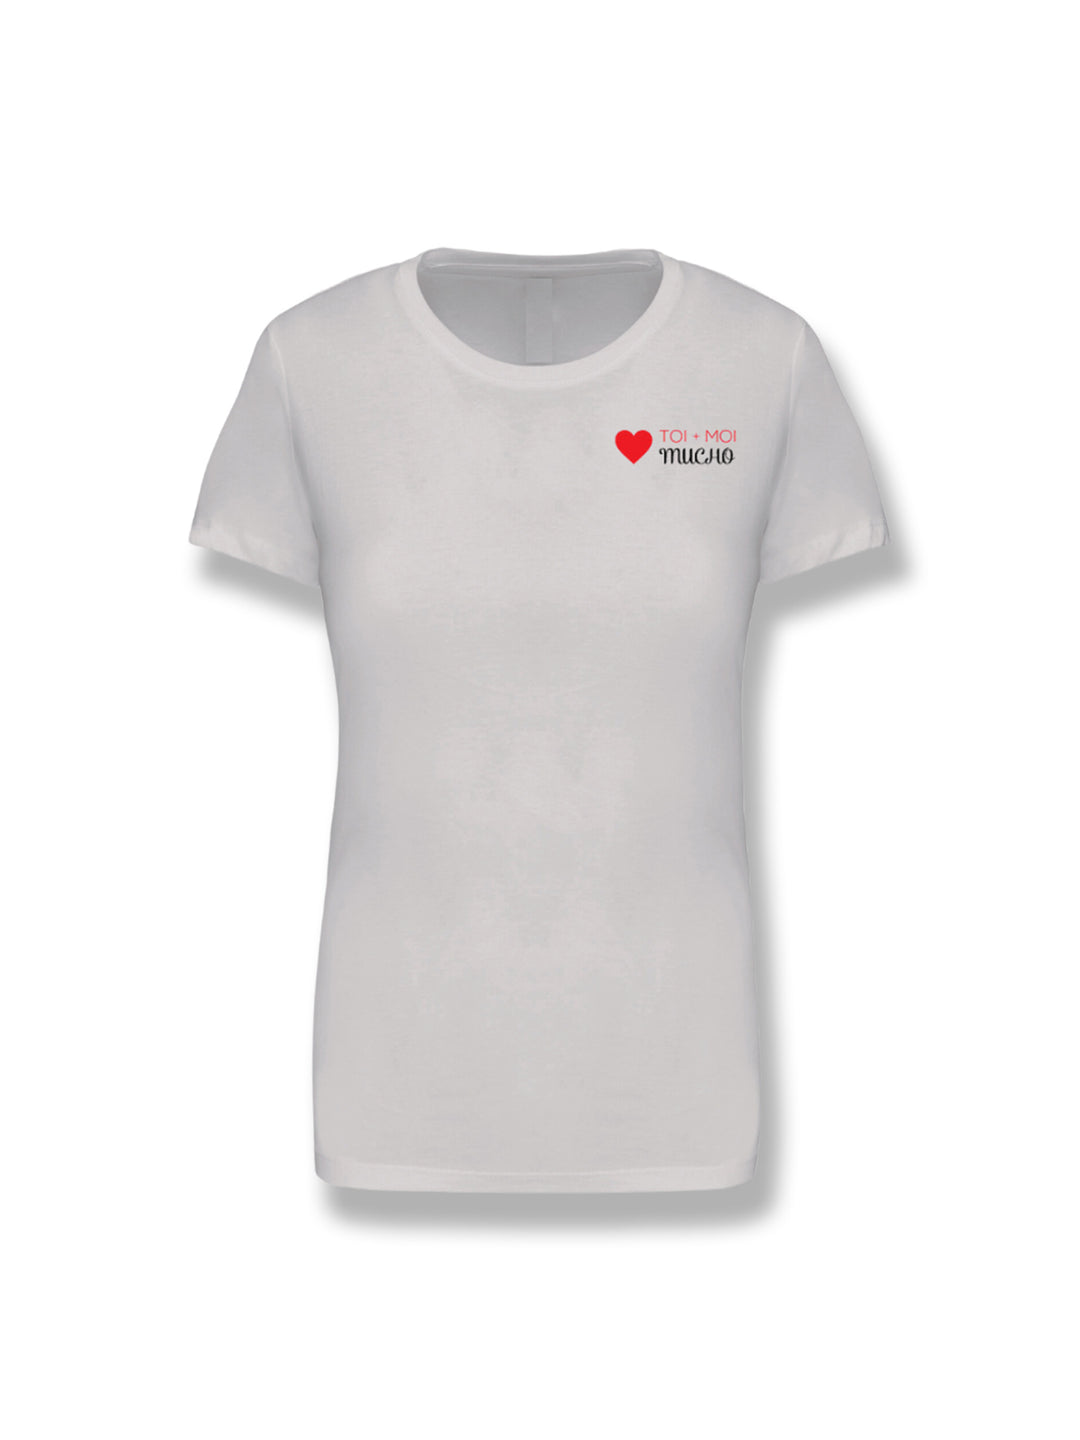 T-Shirt Coton Ville - Toi+Moi - Femme